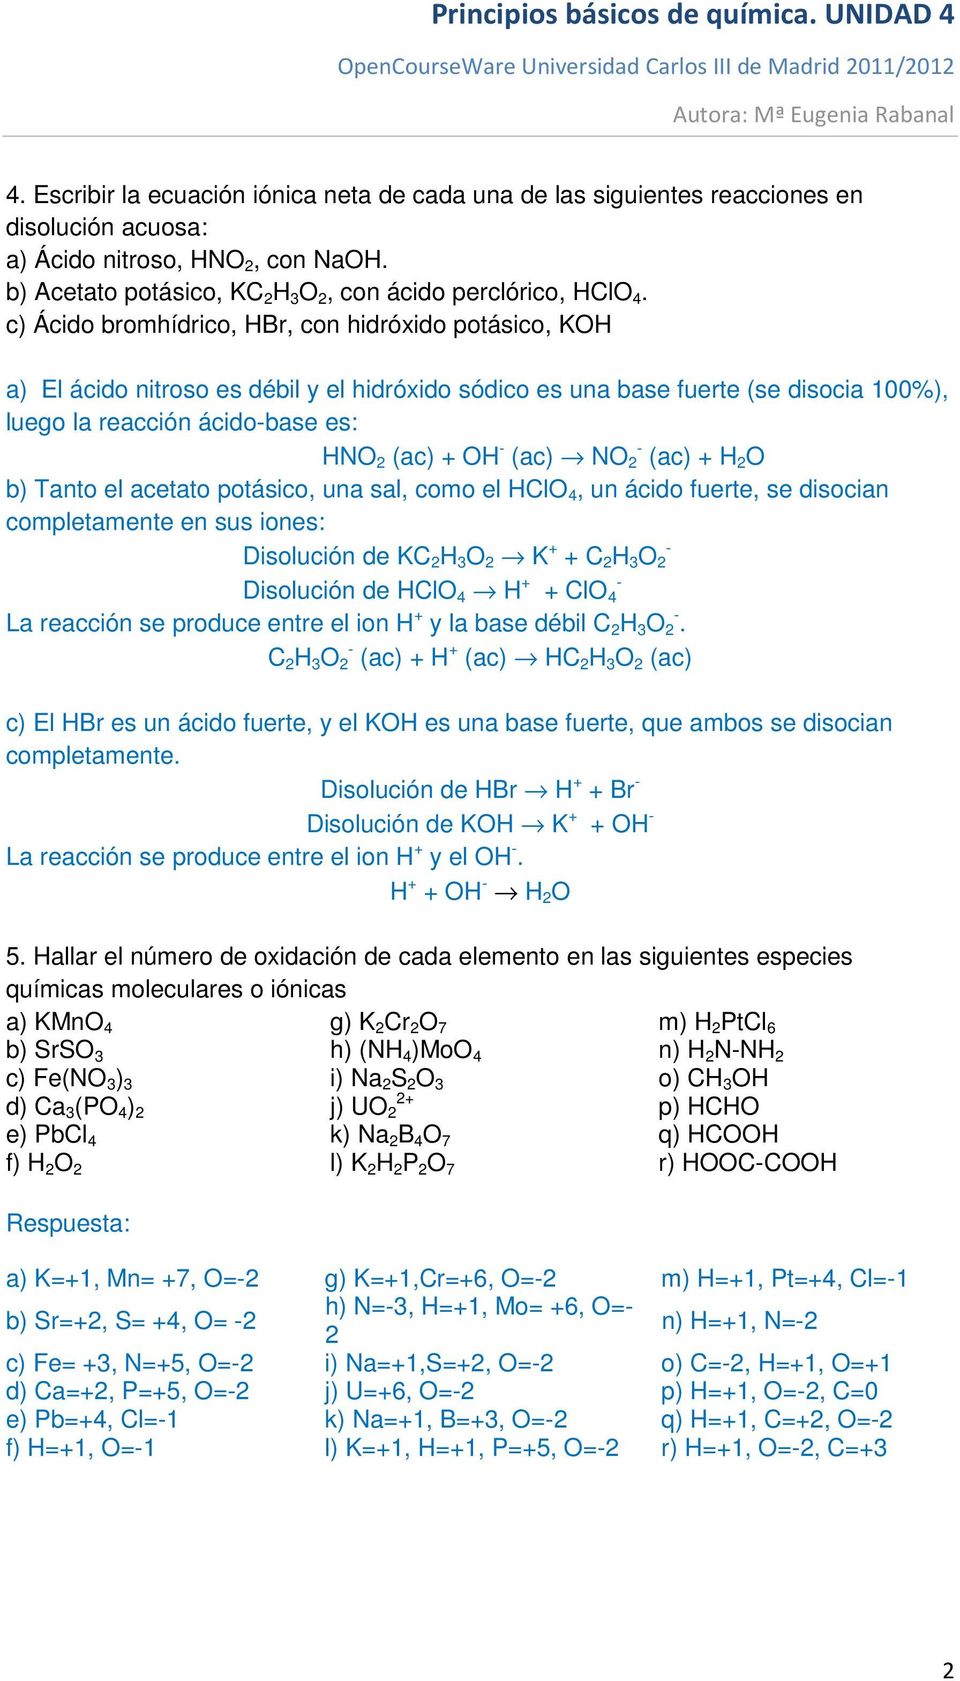 c) Ácido bromhídrico, HBr, con hidróxido potásico, KOH a) El ácido nitroso es débil y el hidróxido sódico es una base fuerte (se disocia 1%), luego la reacción ácidobase es: HNO (ac) + OH (ac) NO